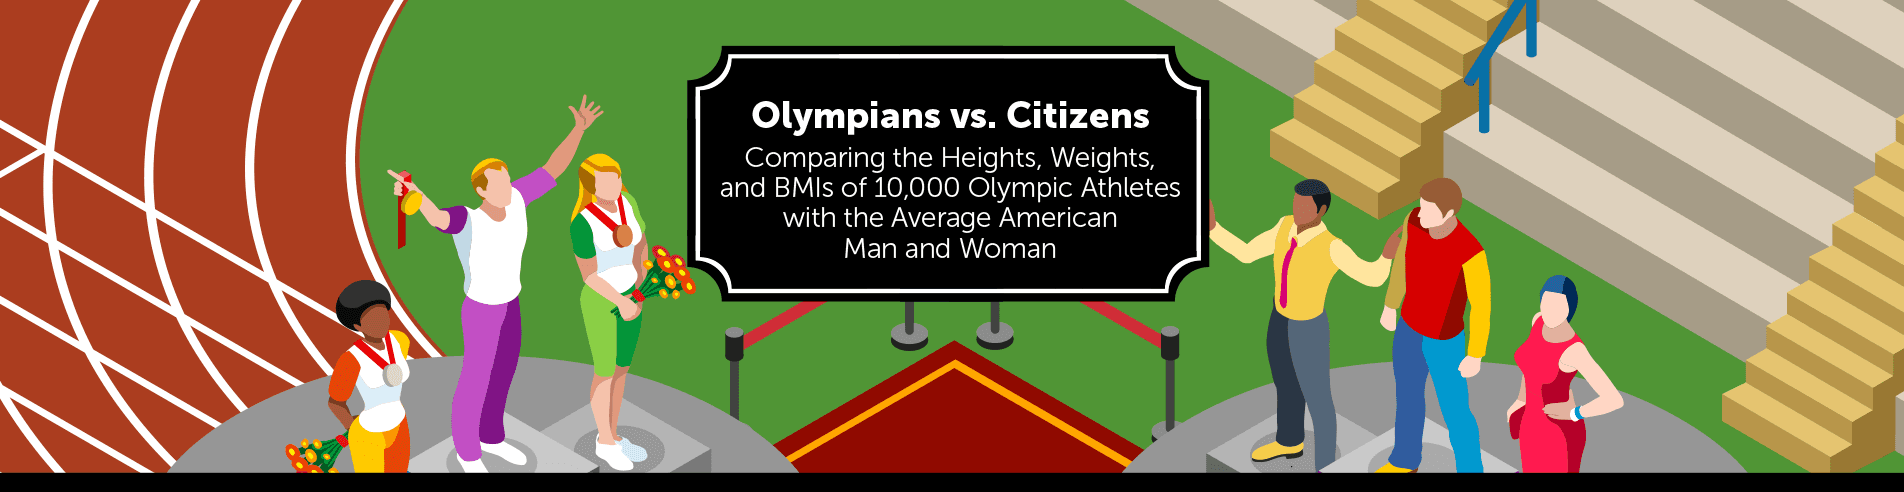 olympian vs citizen header